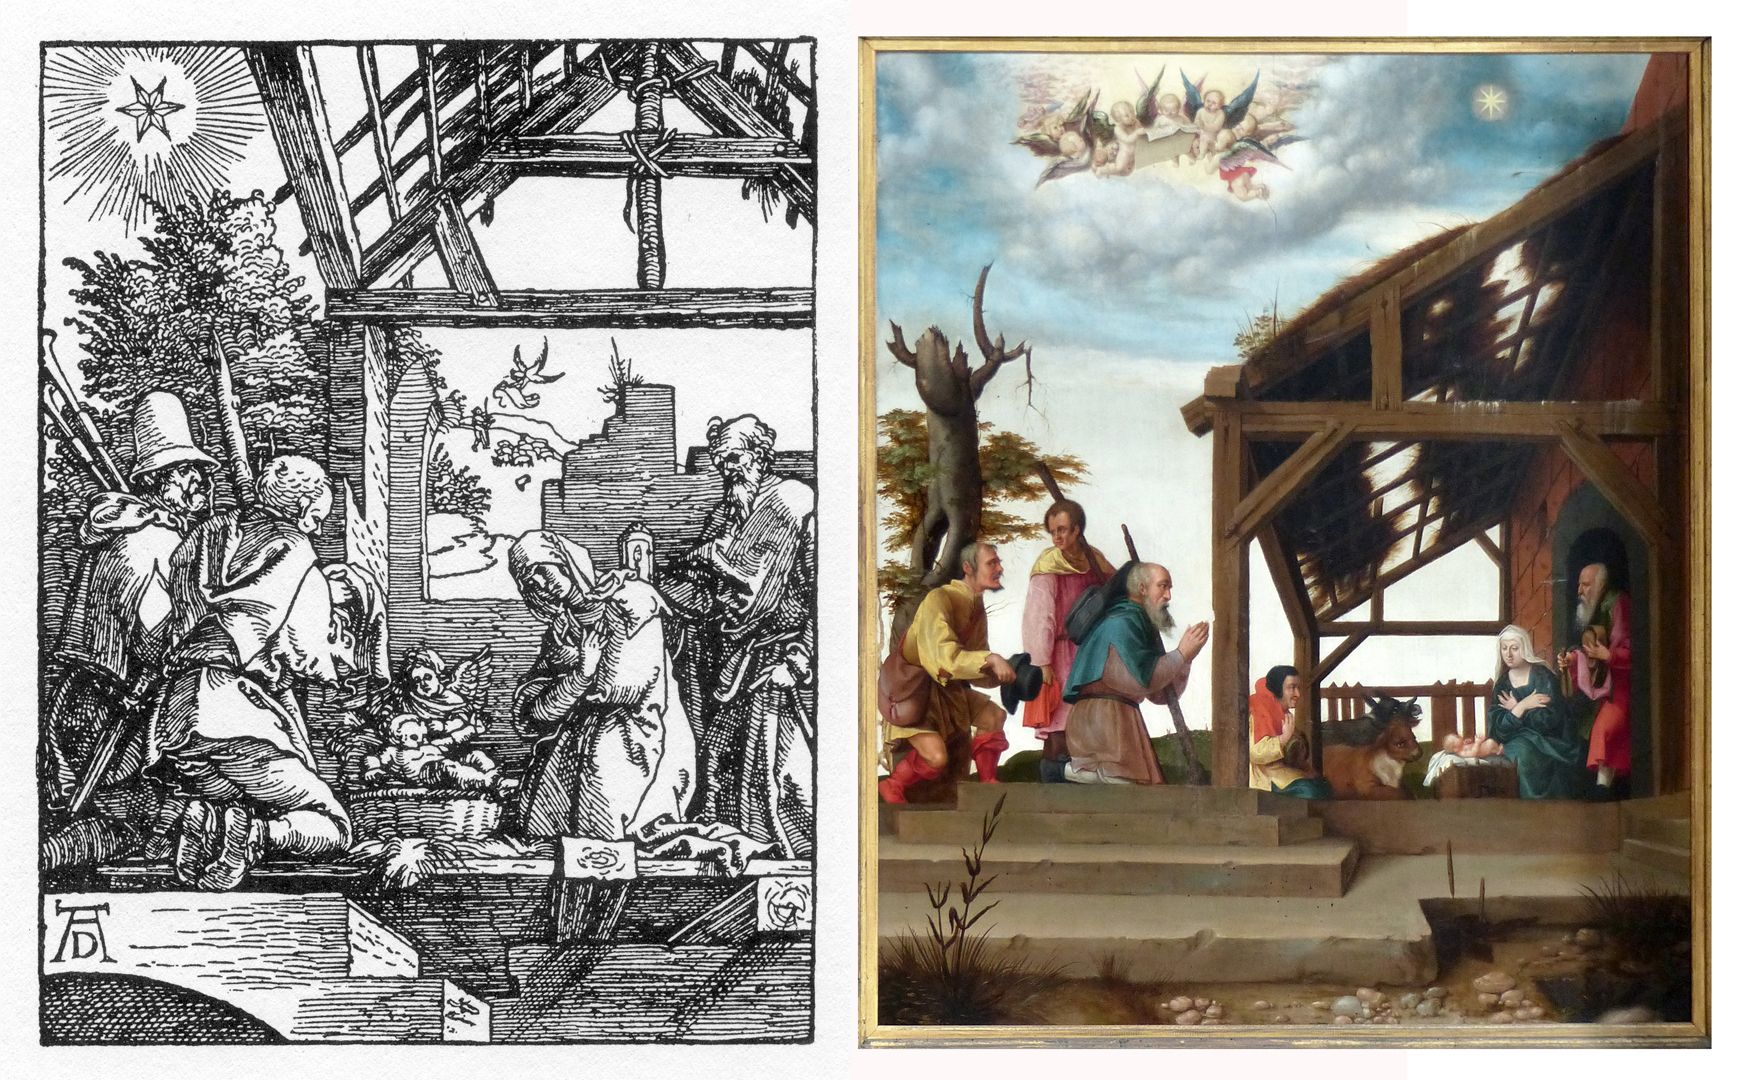 Dürersche Stiftungstafel Vergleichsbild: Dürer, Die Kleine Passion, 1509 - 1511, Jesu Geburt